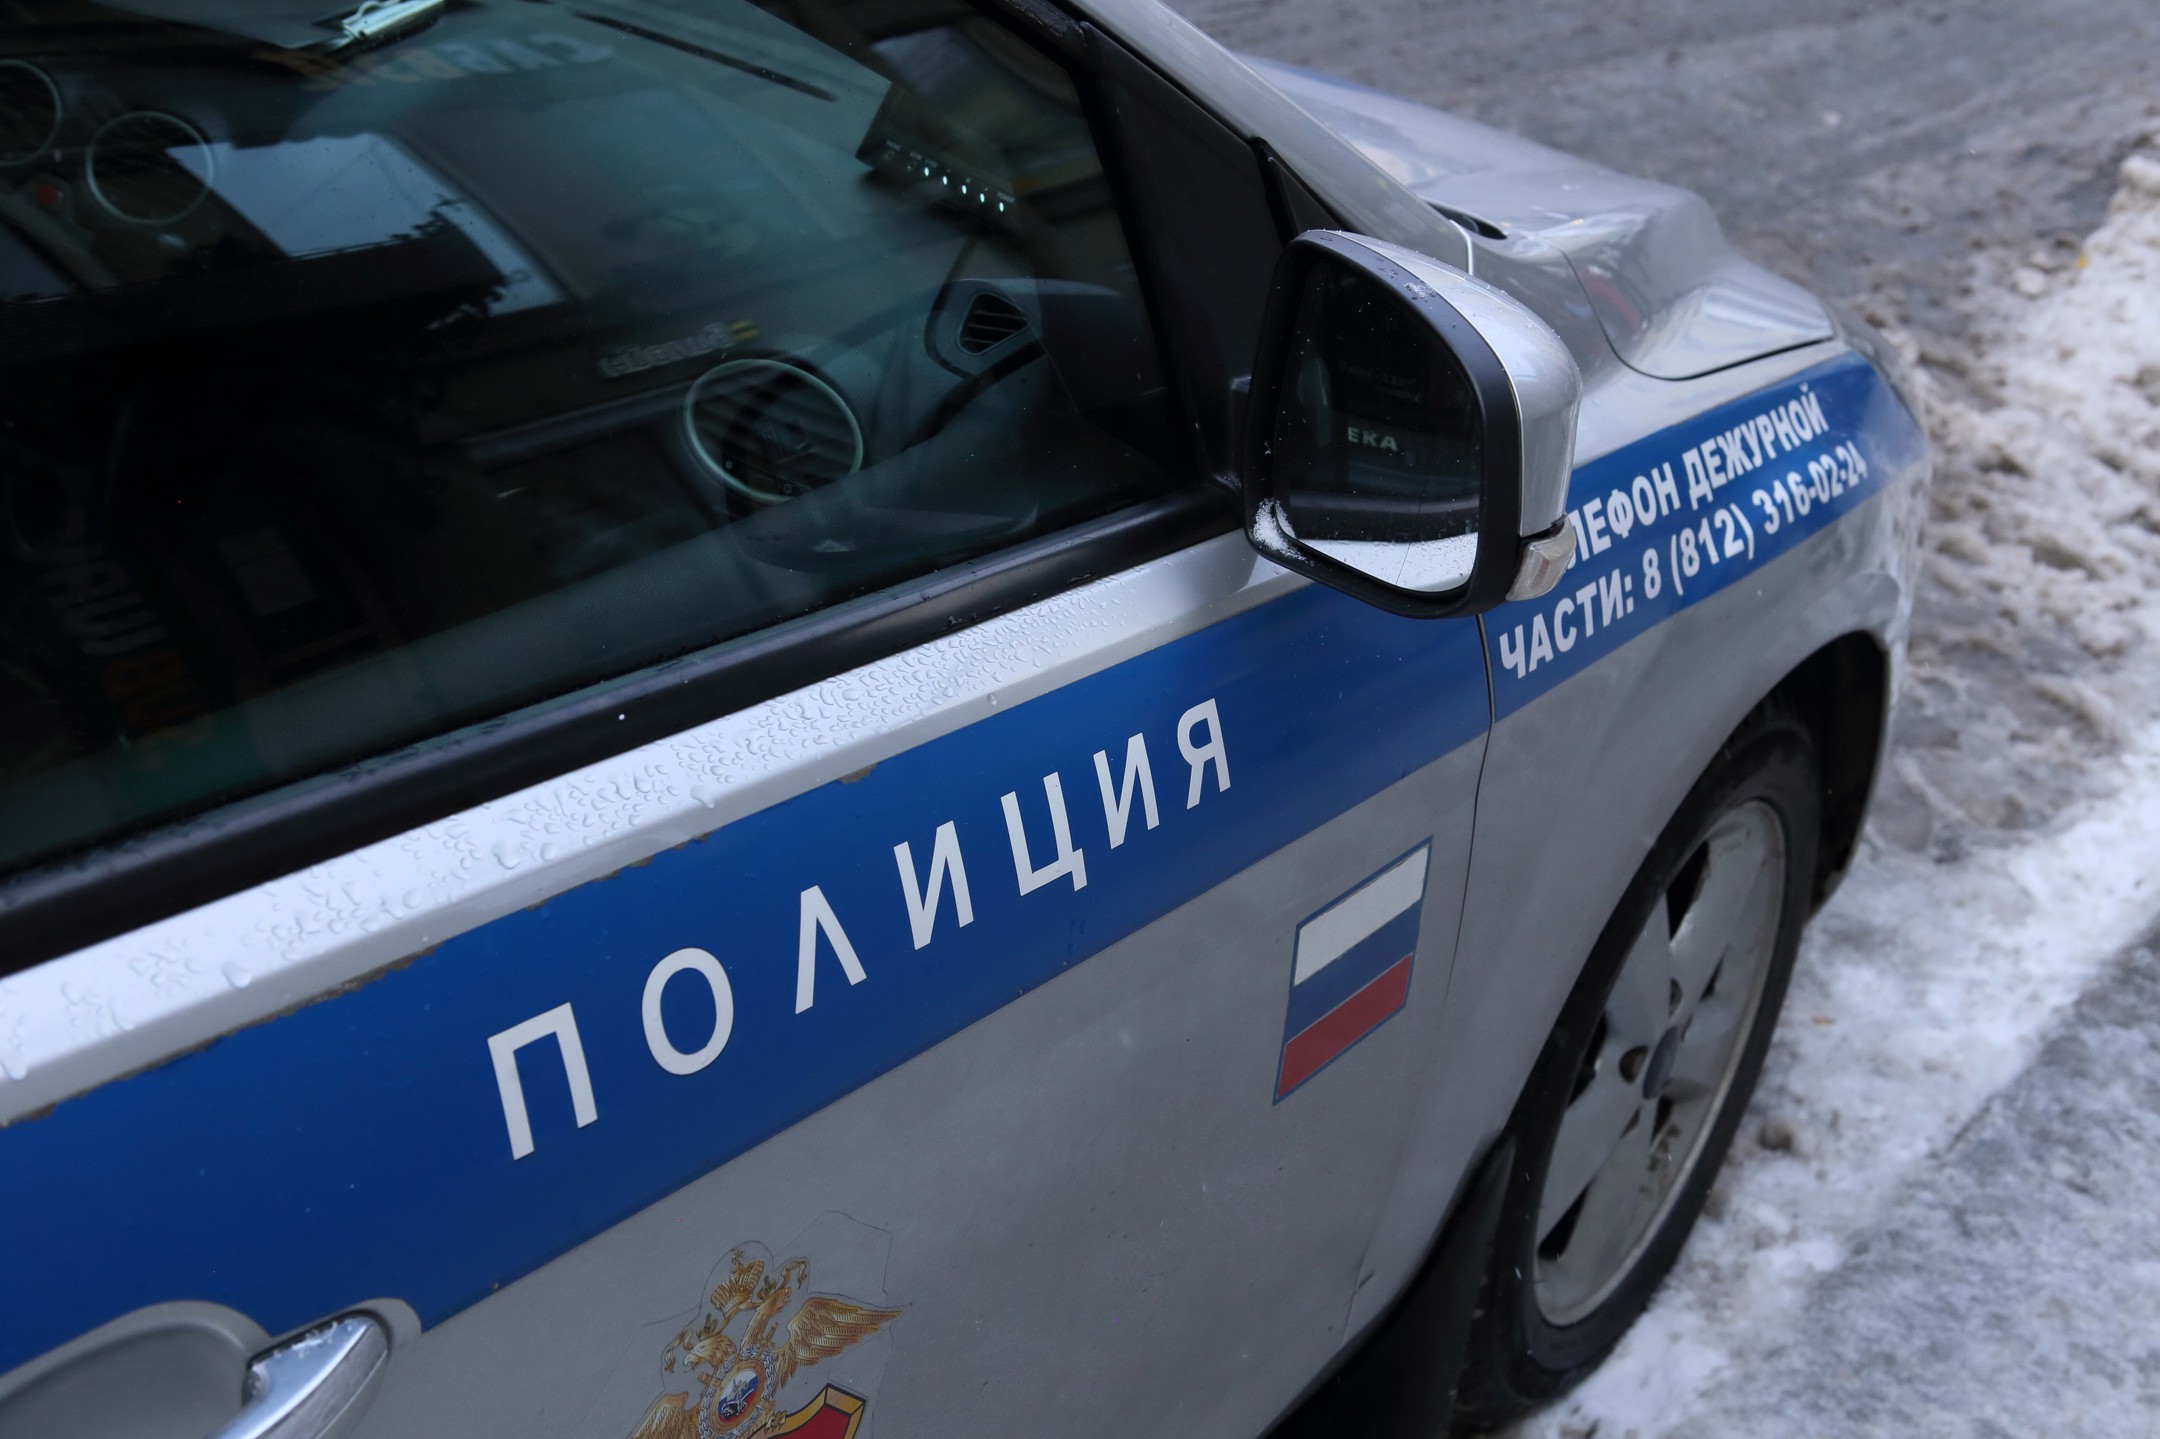 Dailystorm - В Челябинской области задержали экс-депутата по подозрению в педофилии